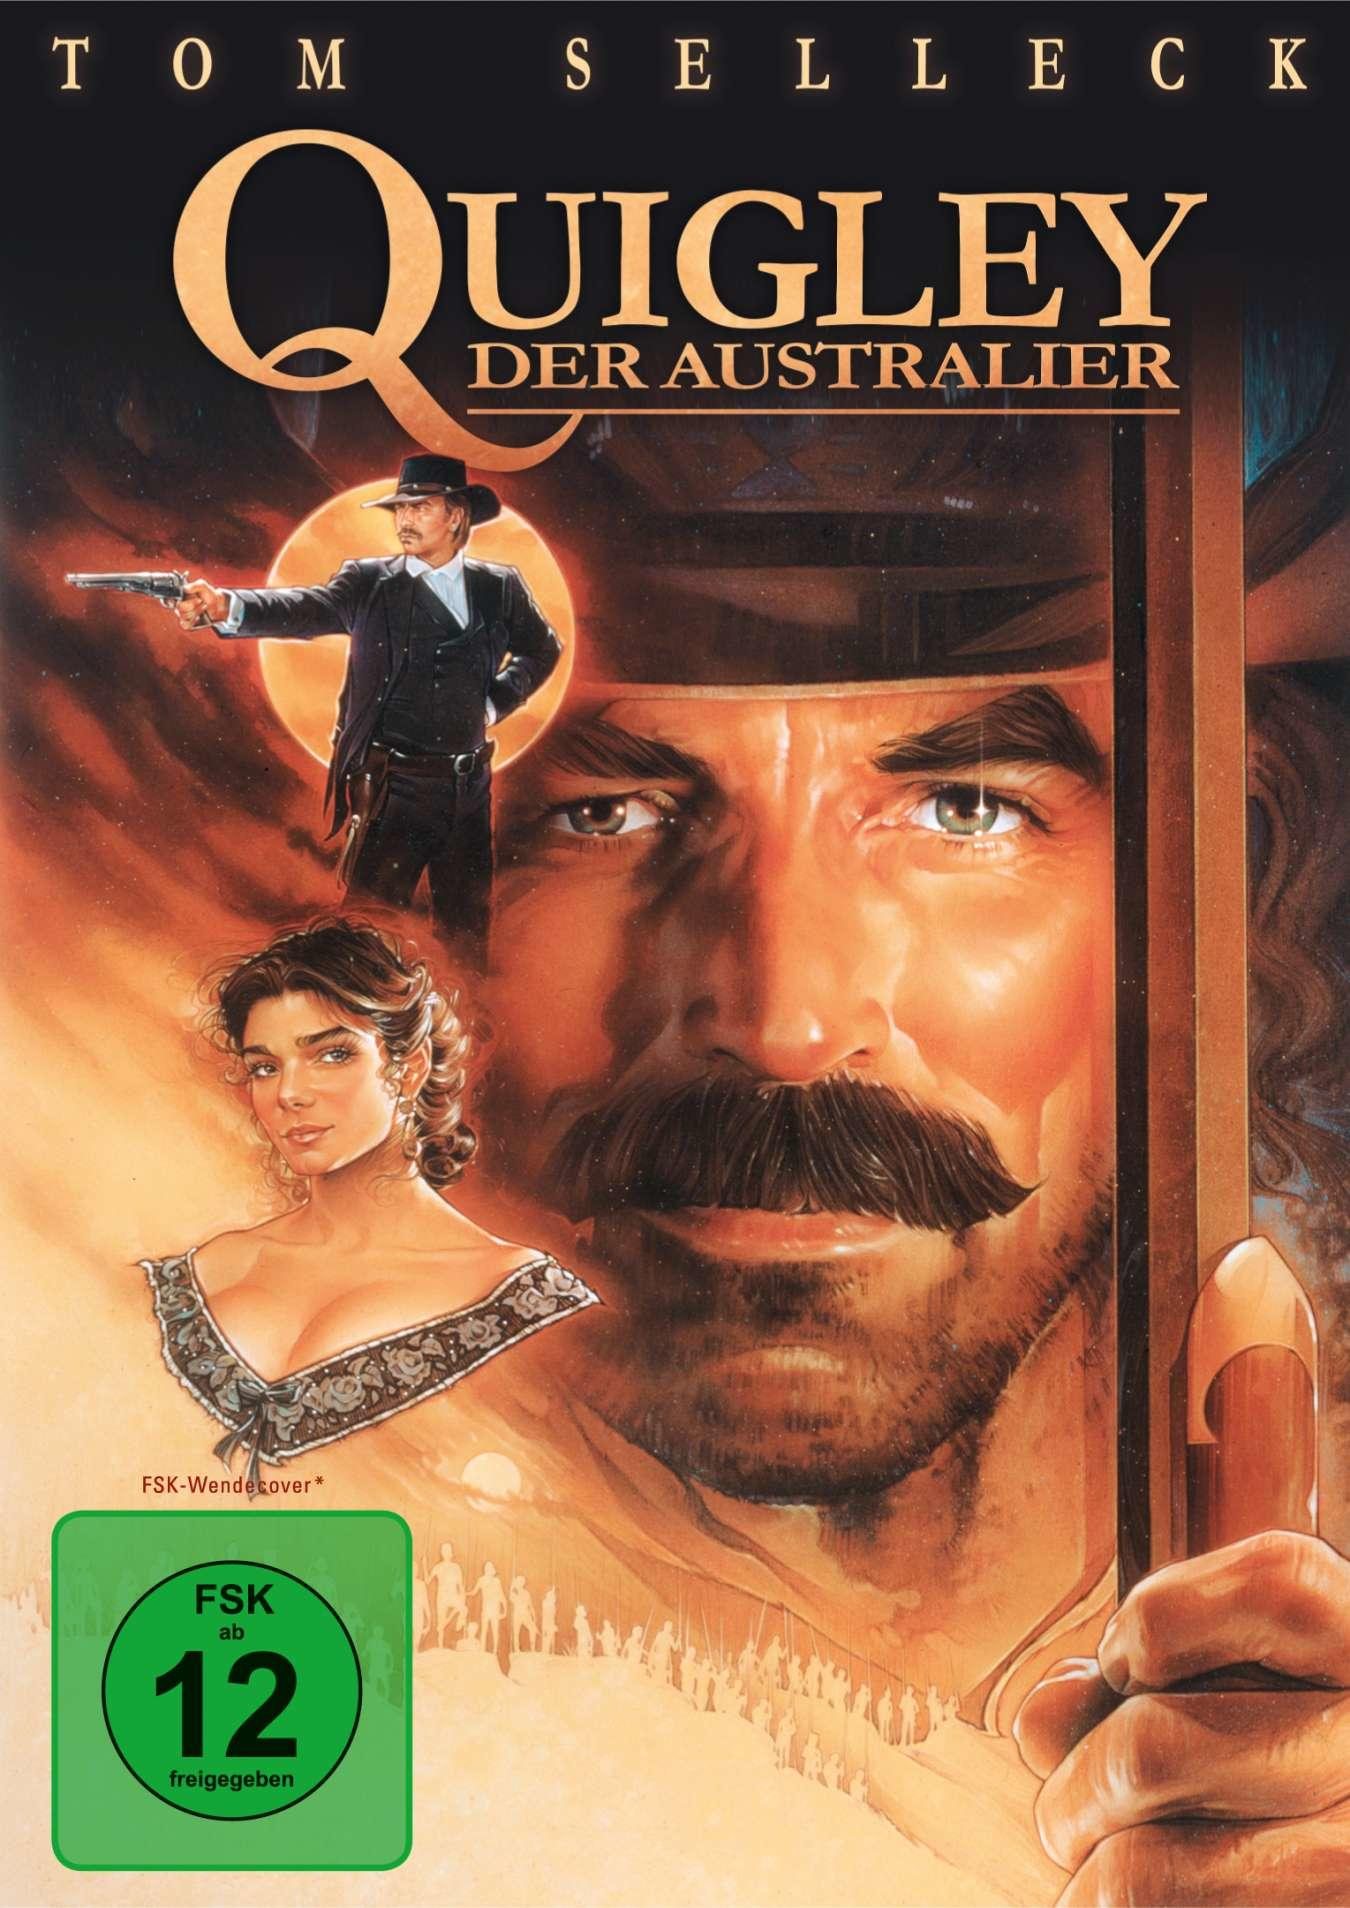 DVD der Quigley, Australier